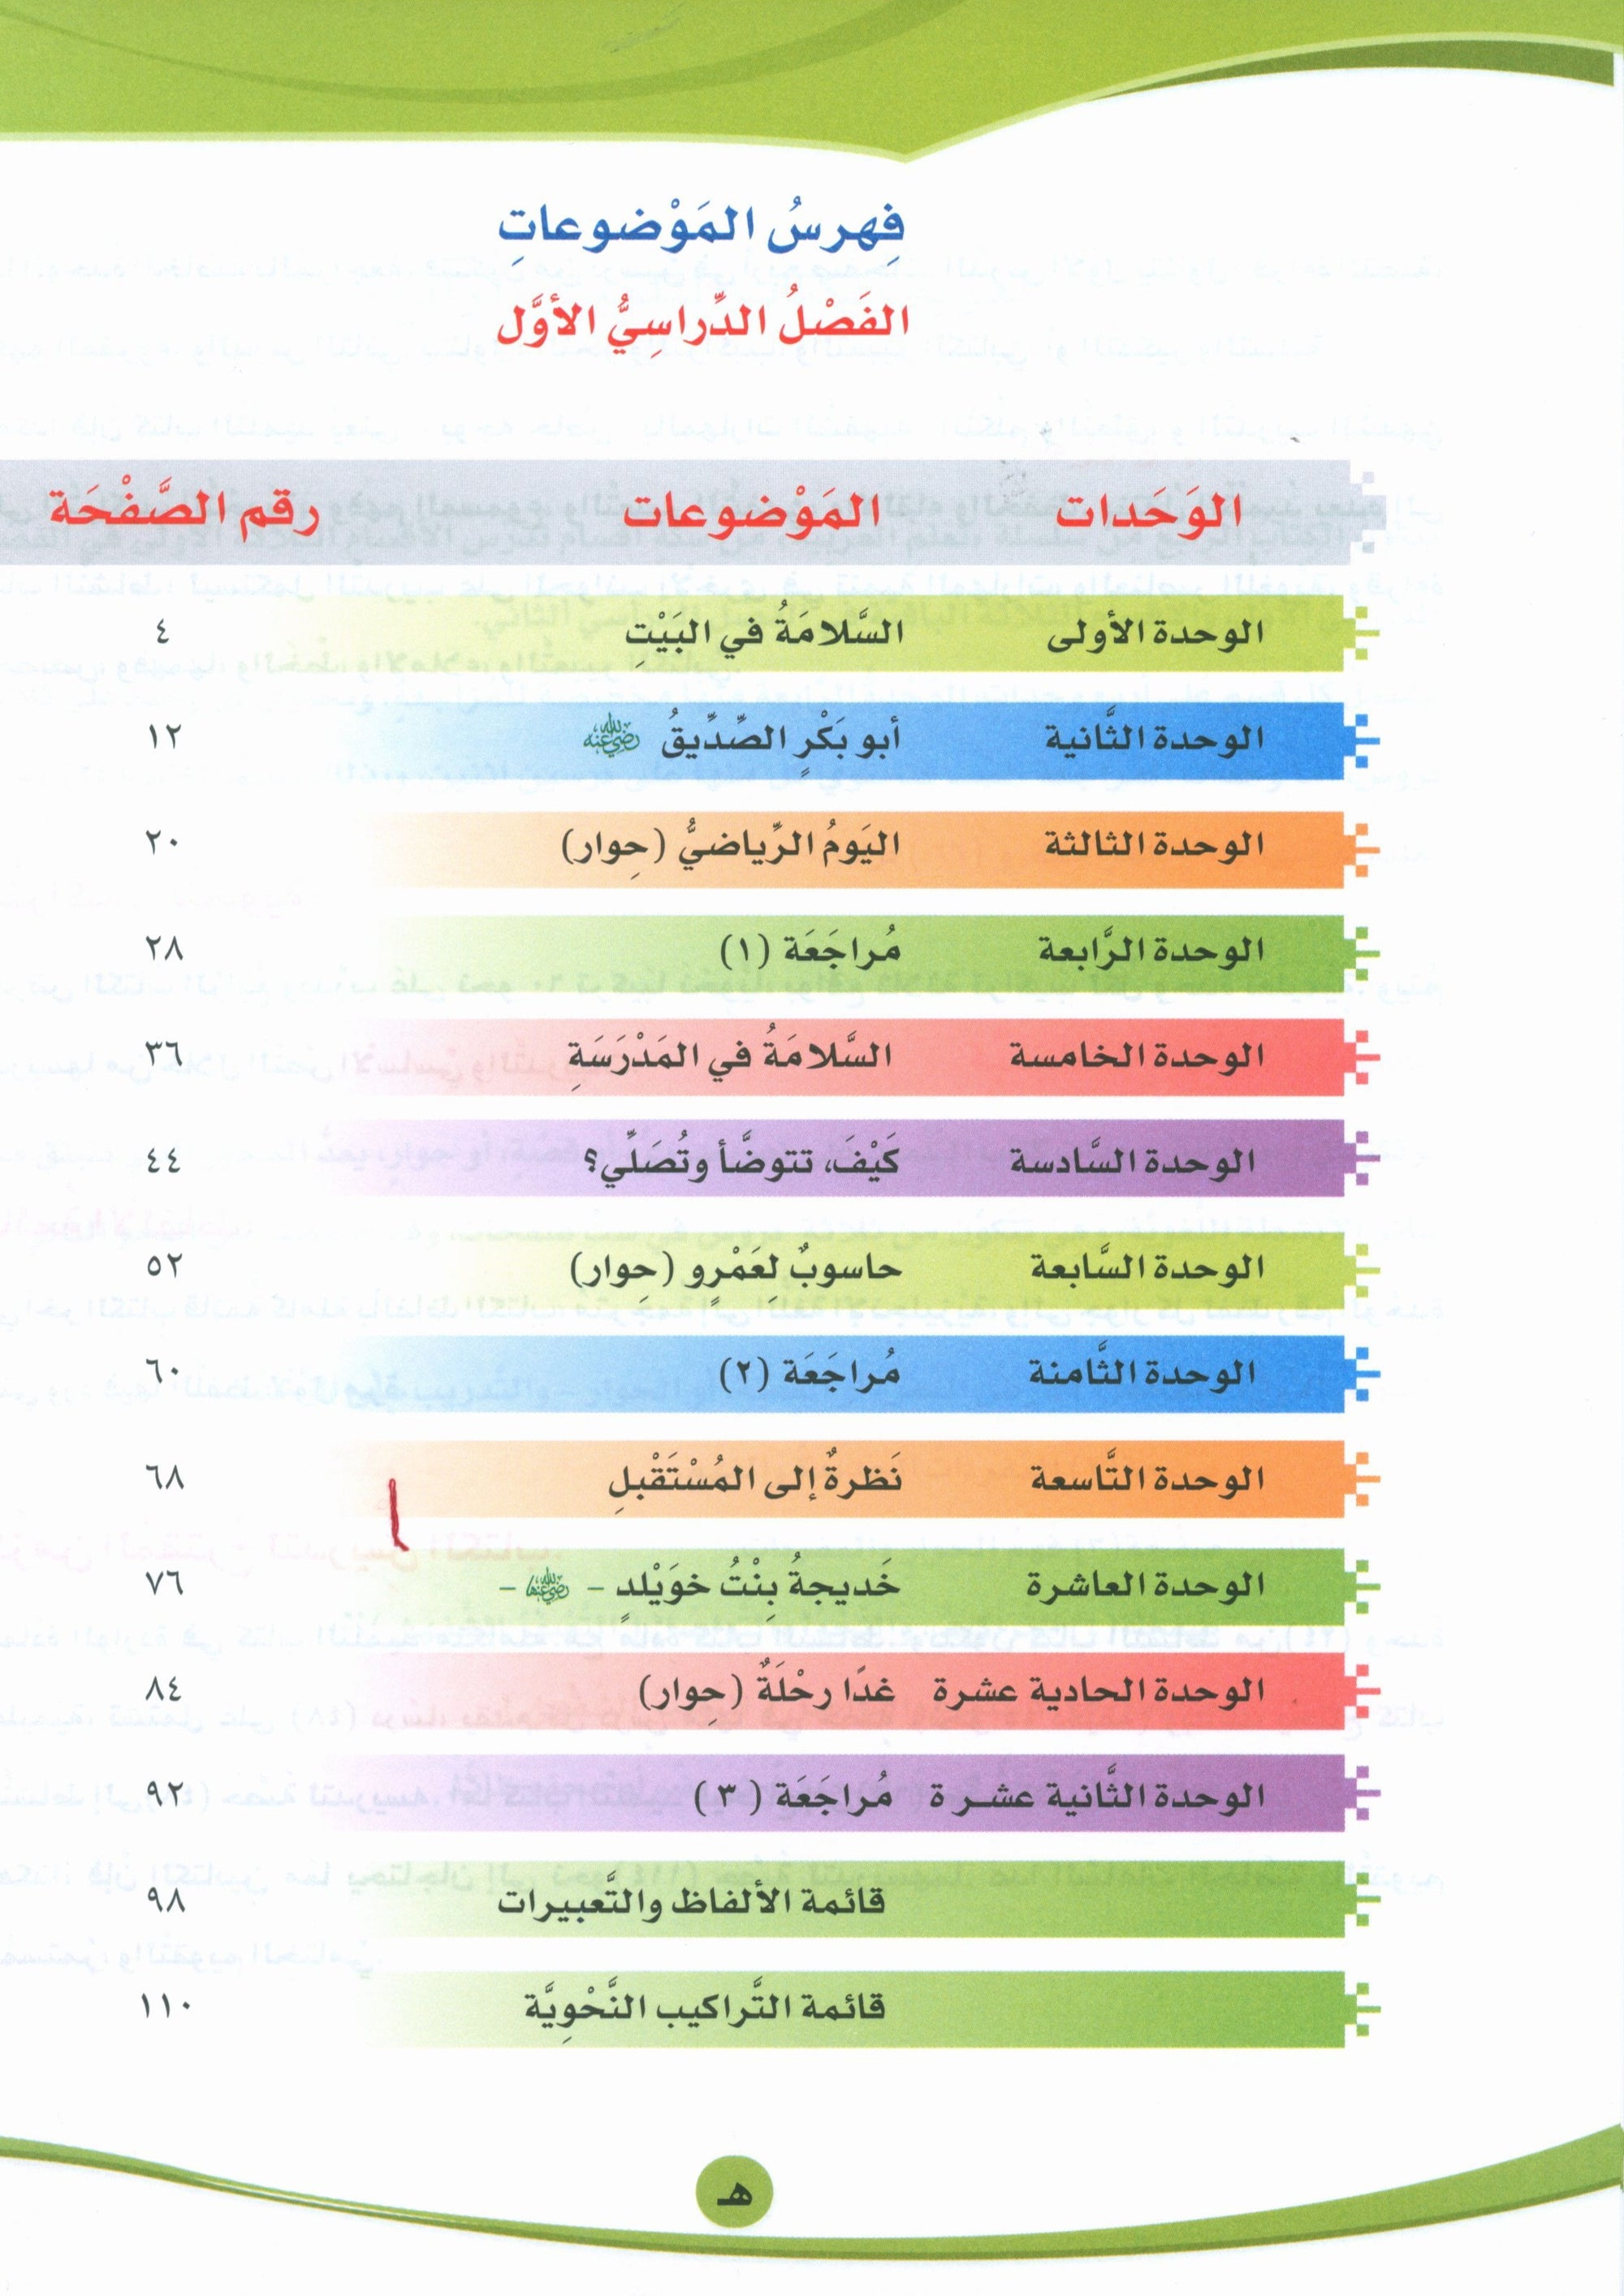 ICO Learn Arabic Textbook Level 4 Part 1 تعلم العربية كتاب التلميذ